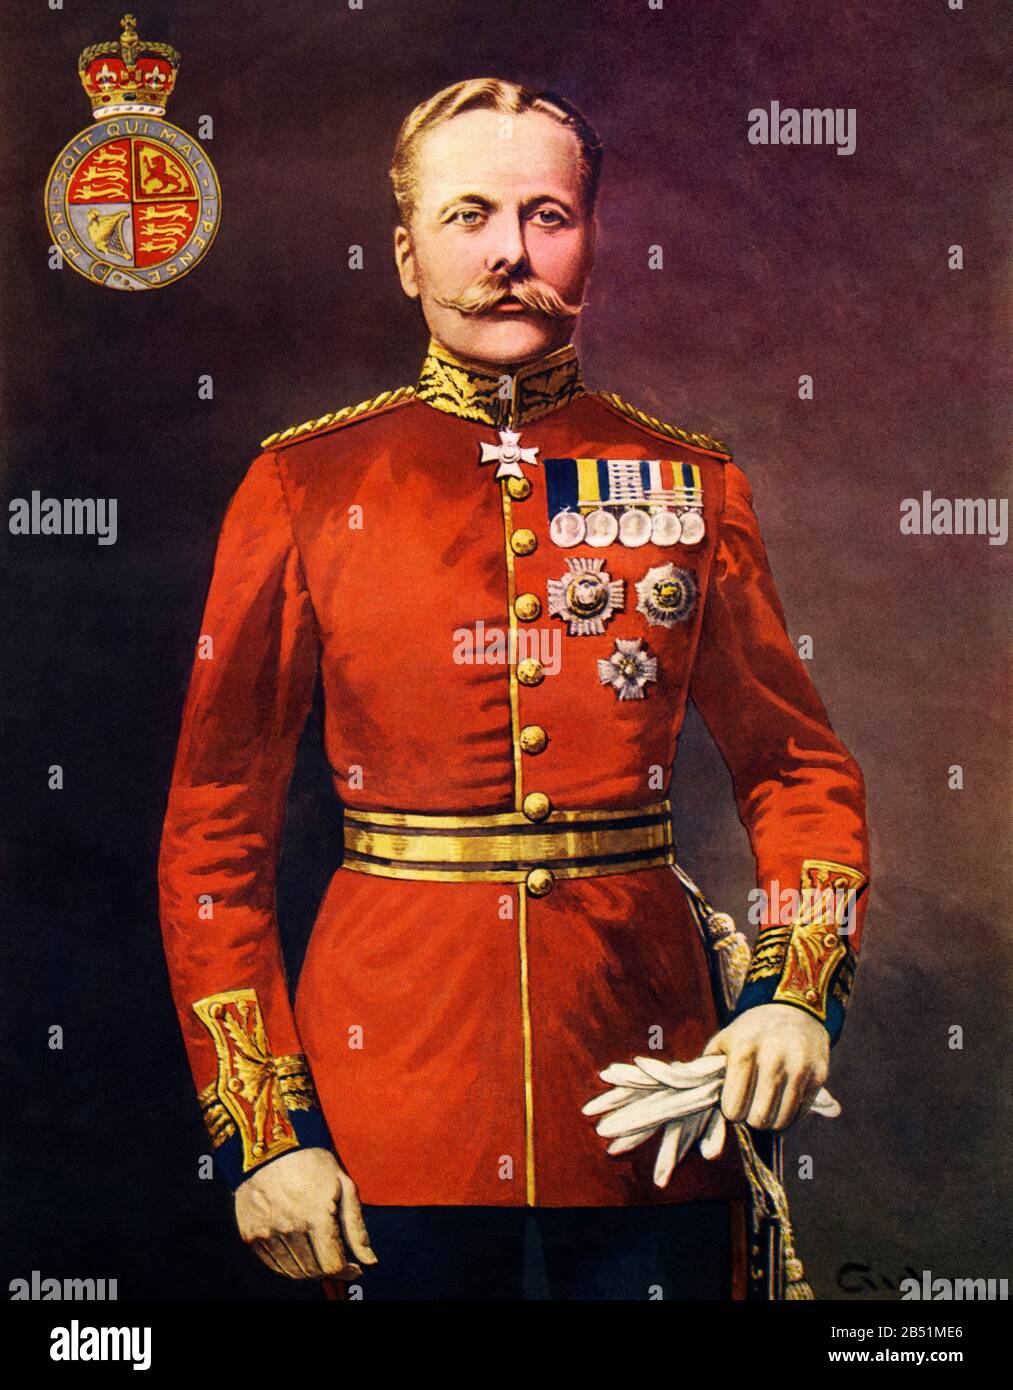 Farbporträt von Douglas Haig (Edinburgh 1861 - 1928), Feldmarschall und erster Earl Haig, war während des ersten Weltkriegs ein prominentes britisches Empire-Militär Stockfoto